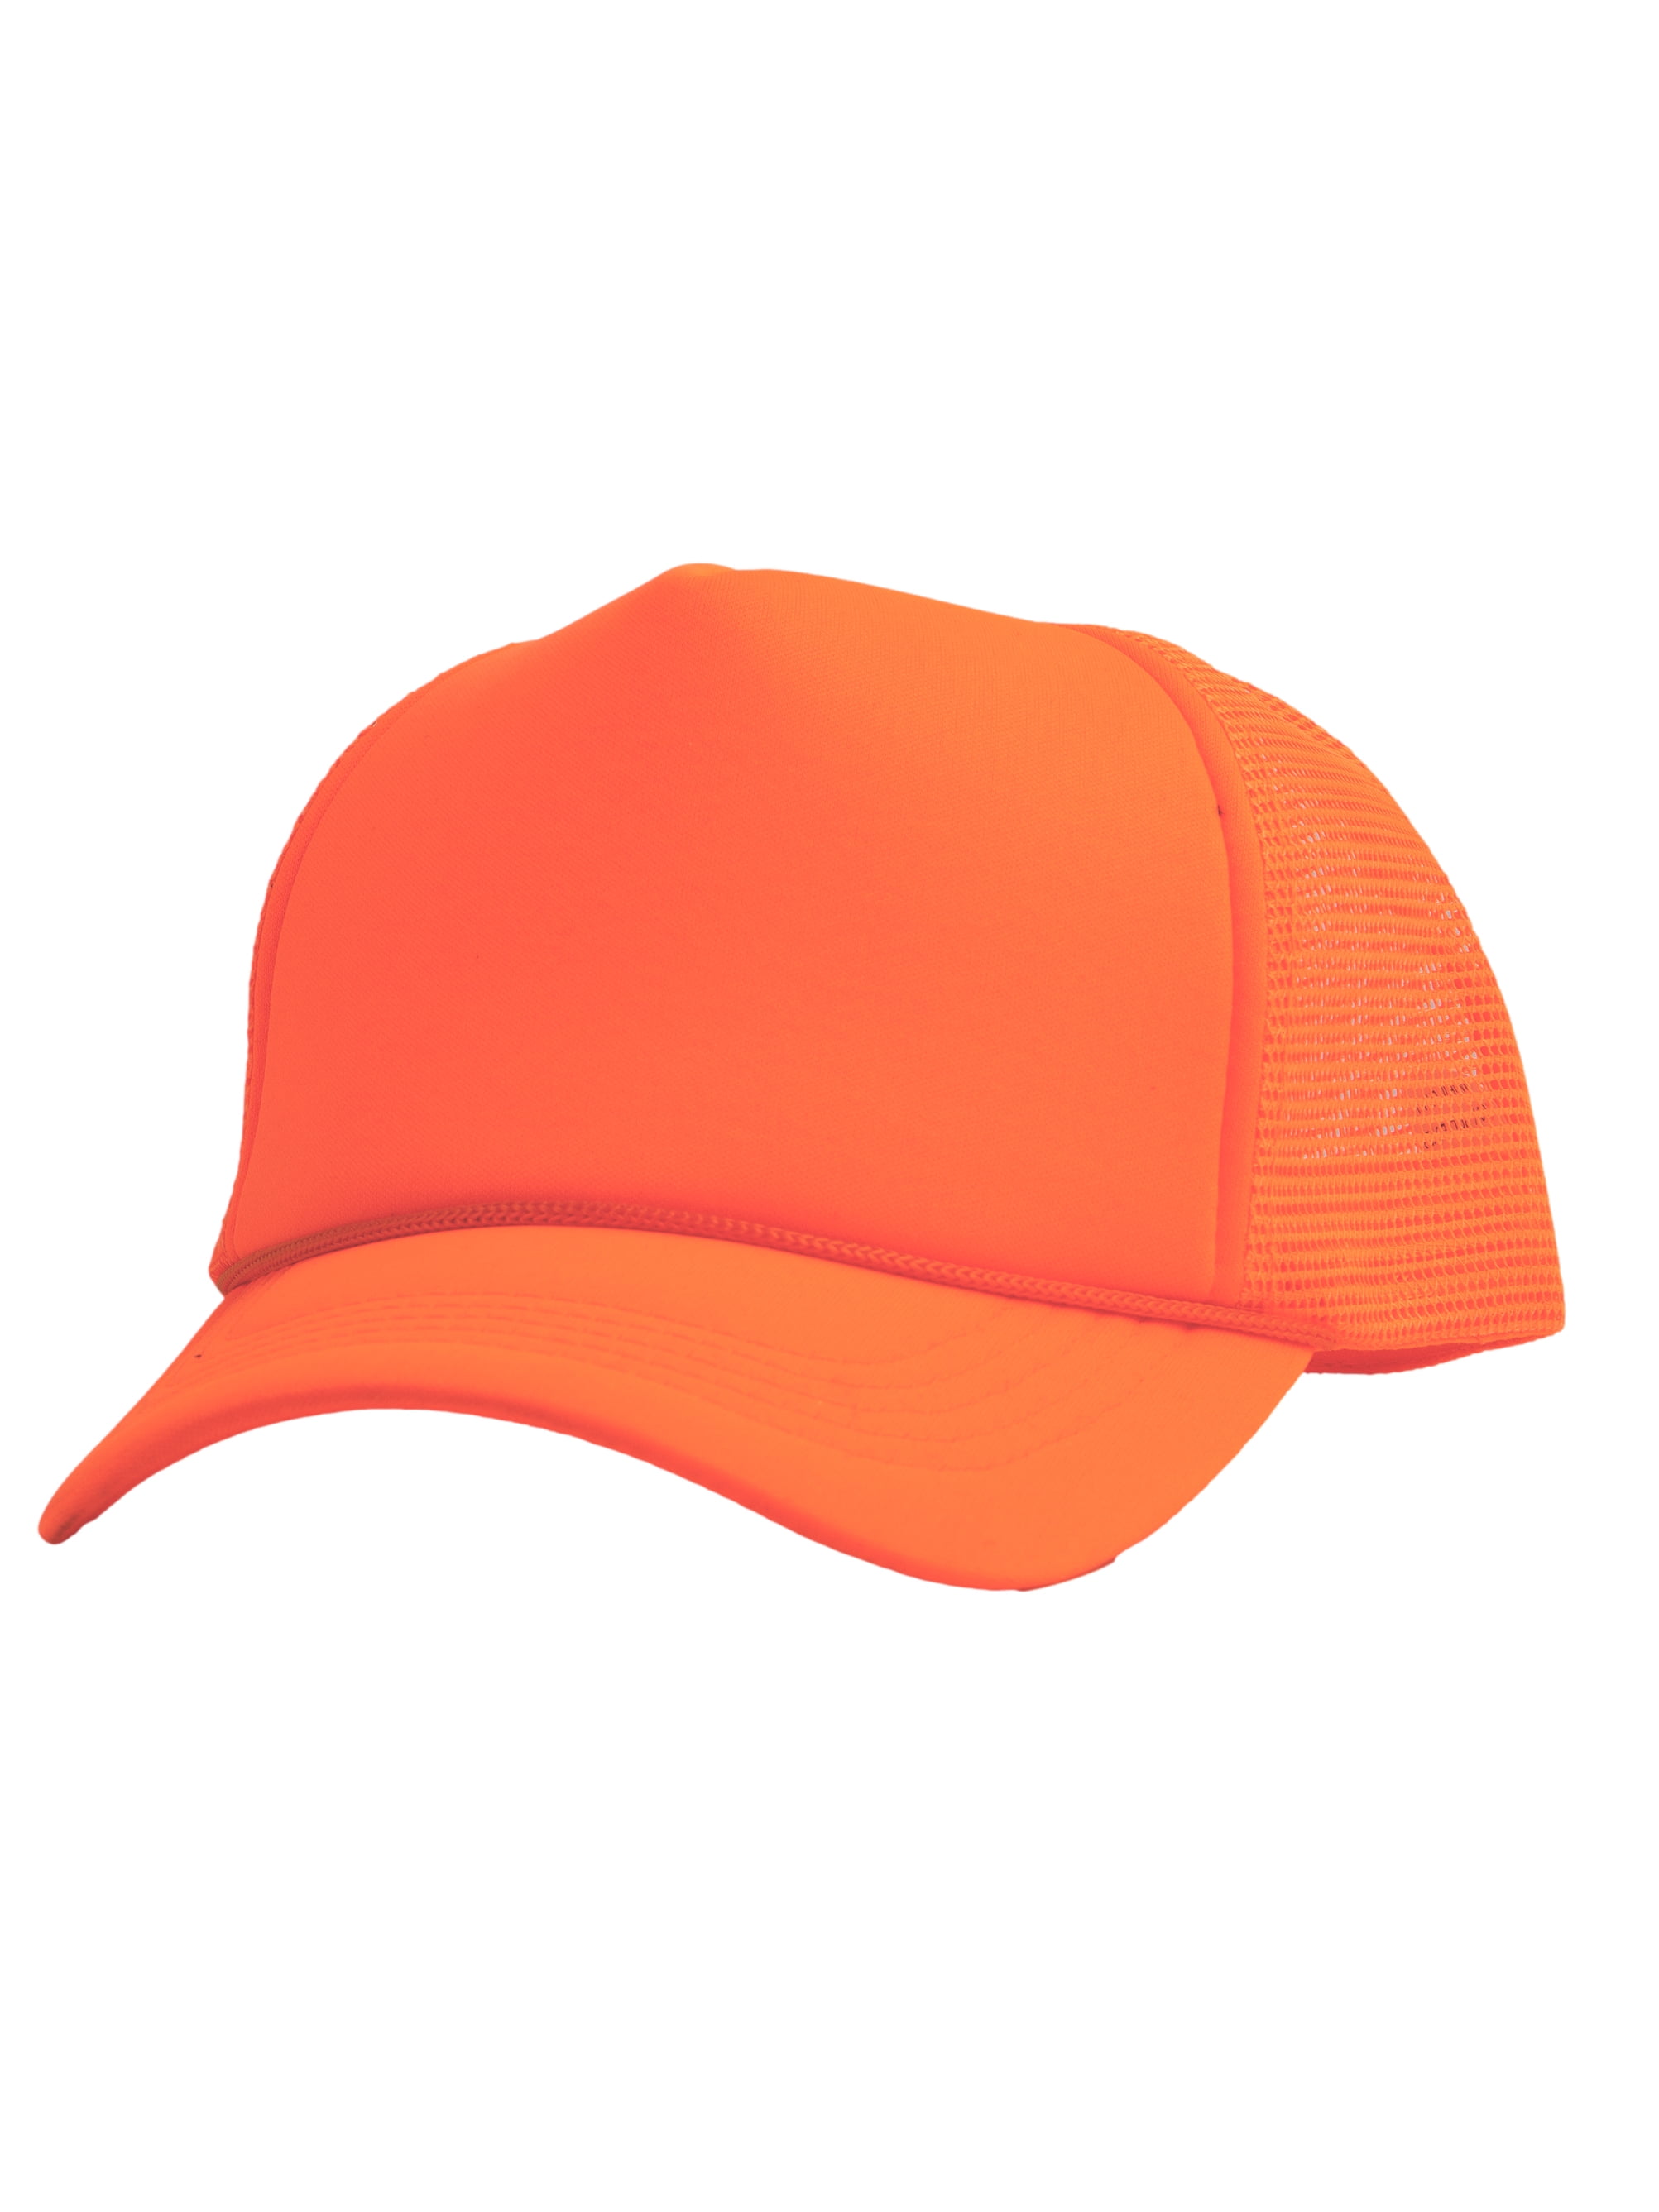 Top Headwear Blank Mens Orange - Foam Hat Mesh Trucker Neon Trucker Snapback Hats